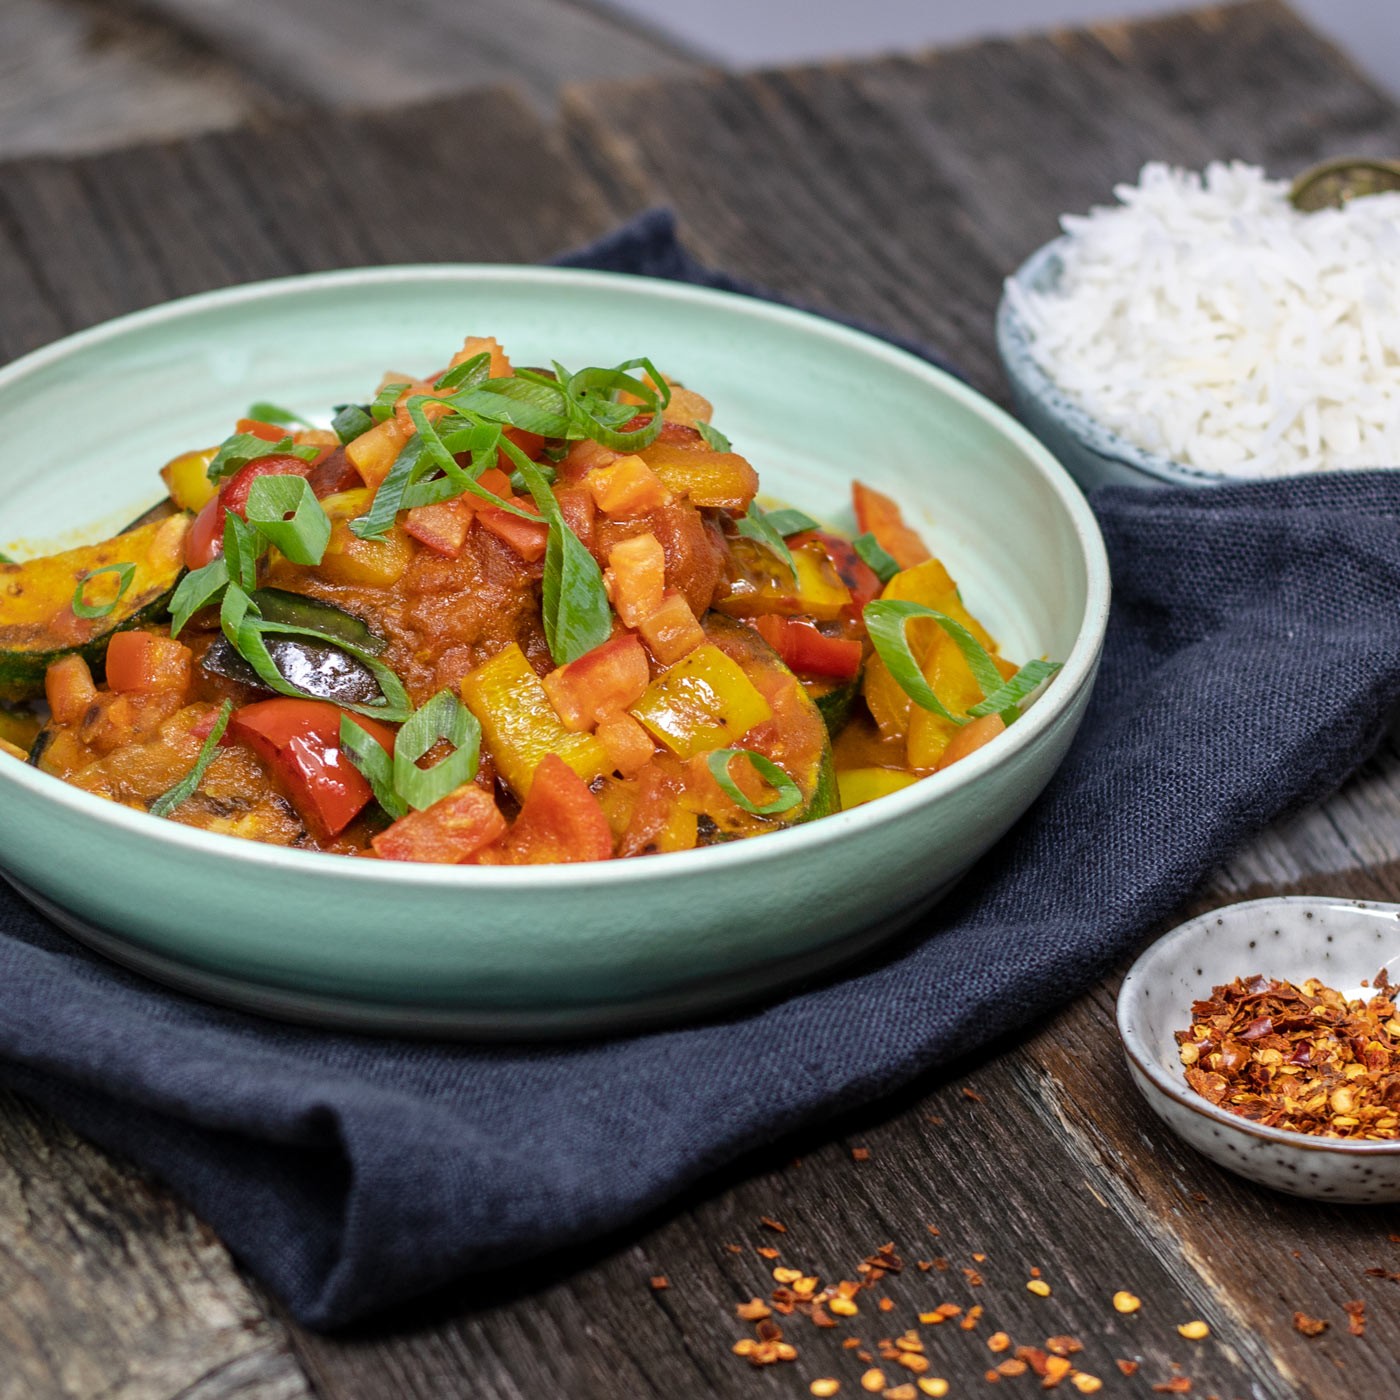 Jalifrezi - Indische Gemüsepfanne mit Mango-Curry Sauce und Basmatireis